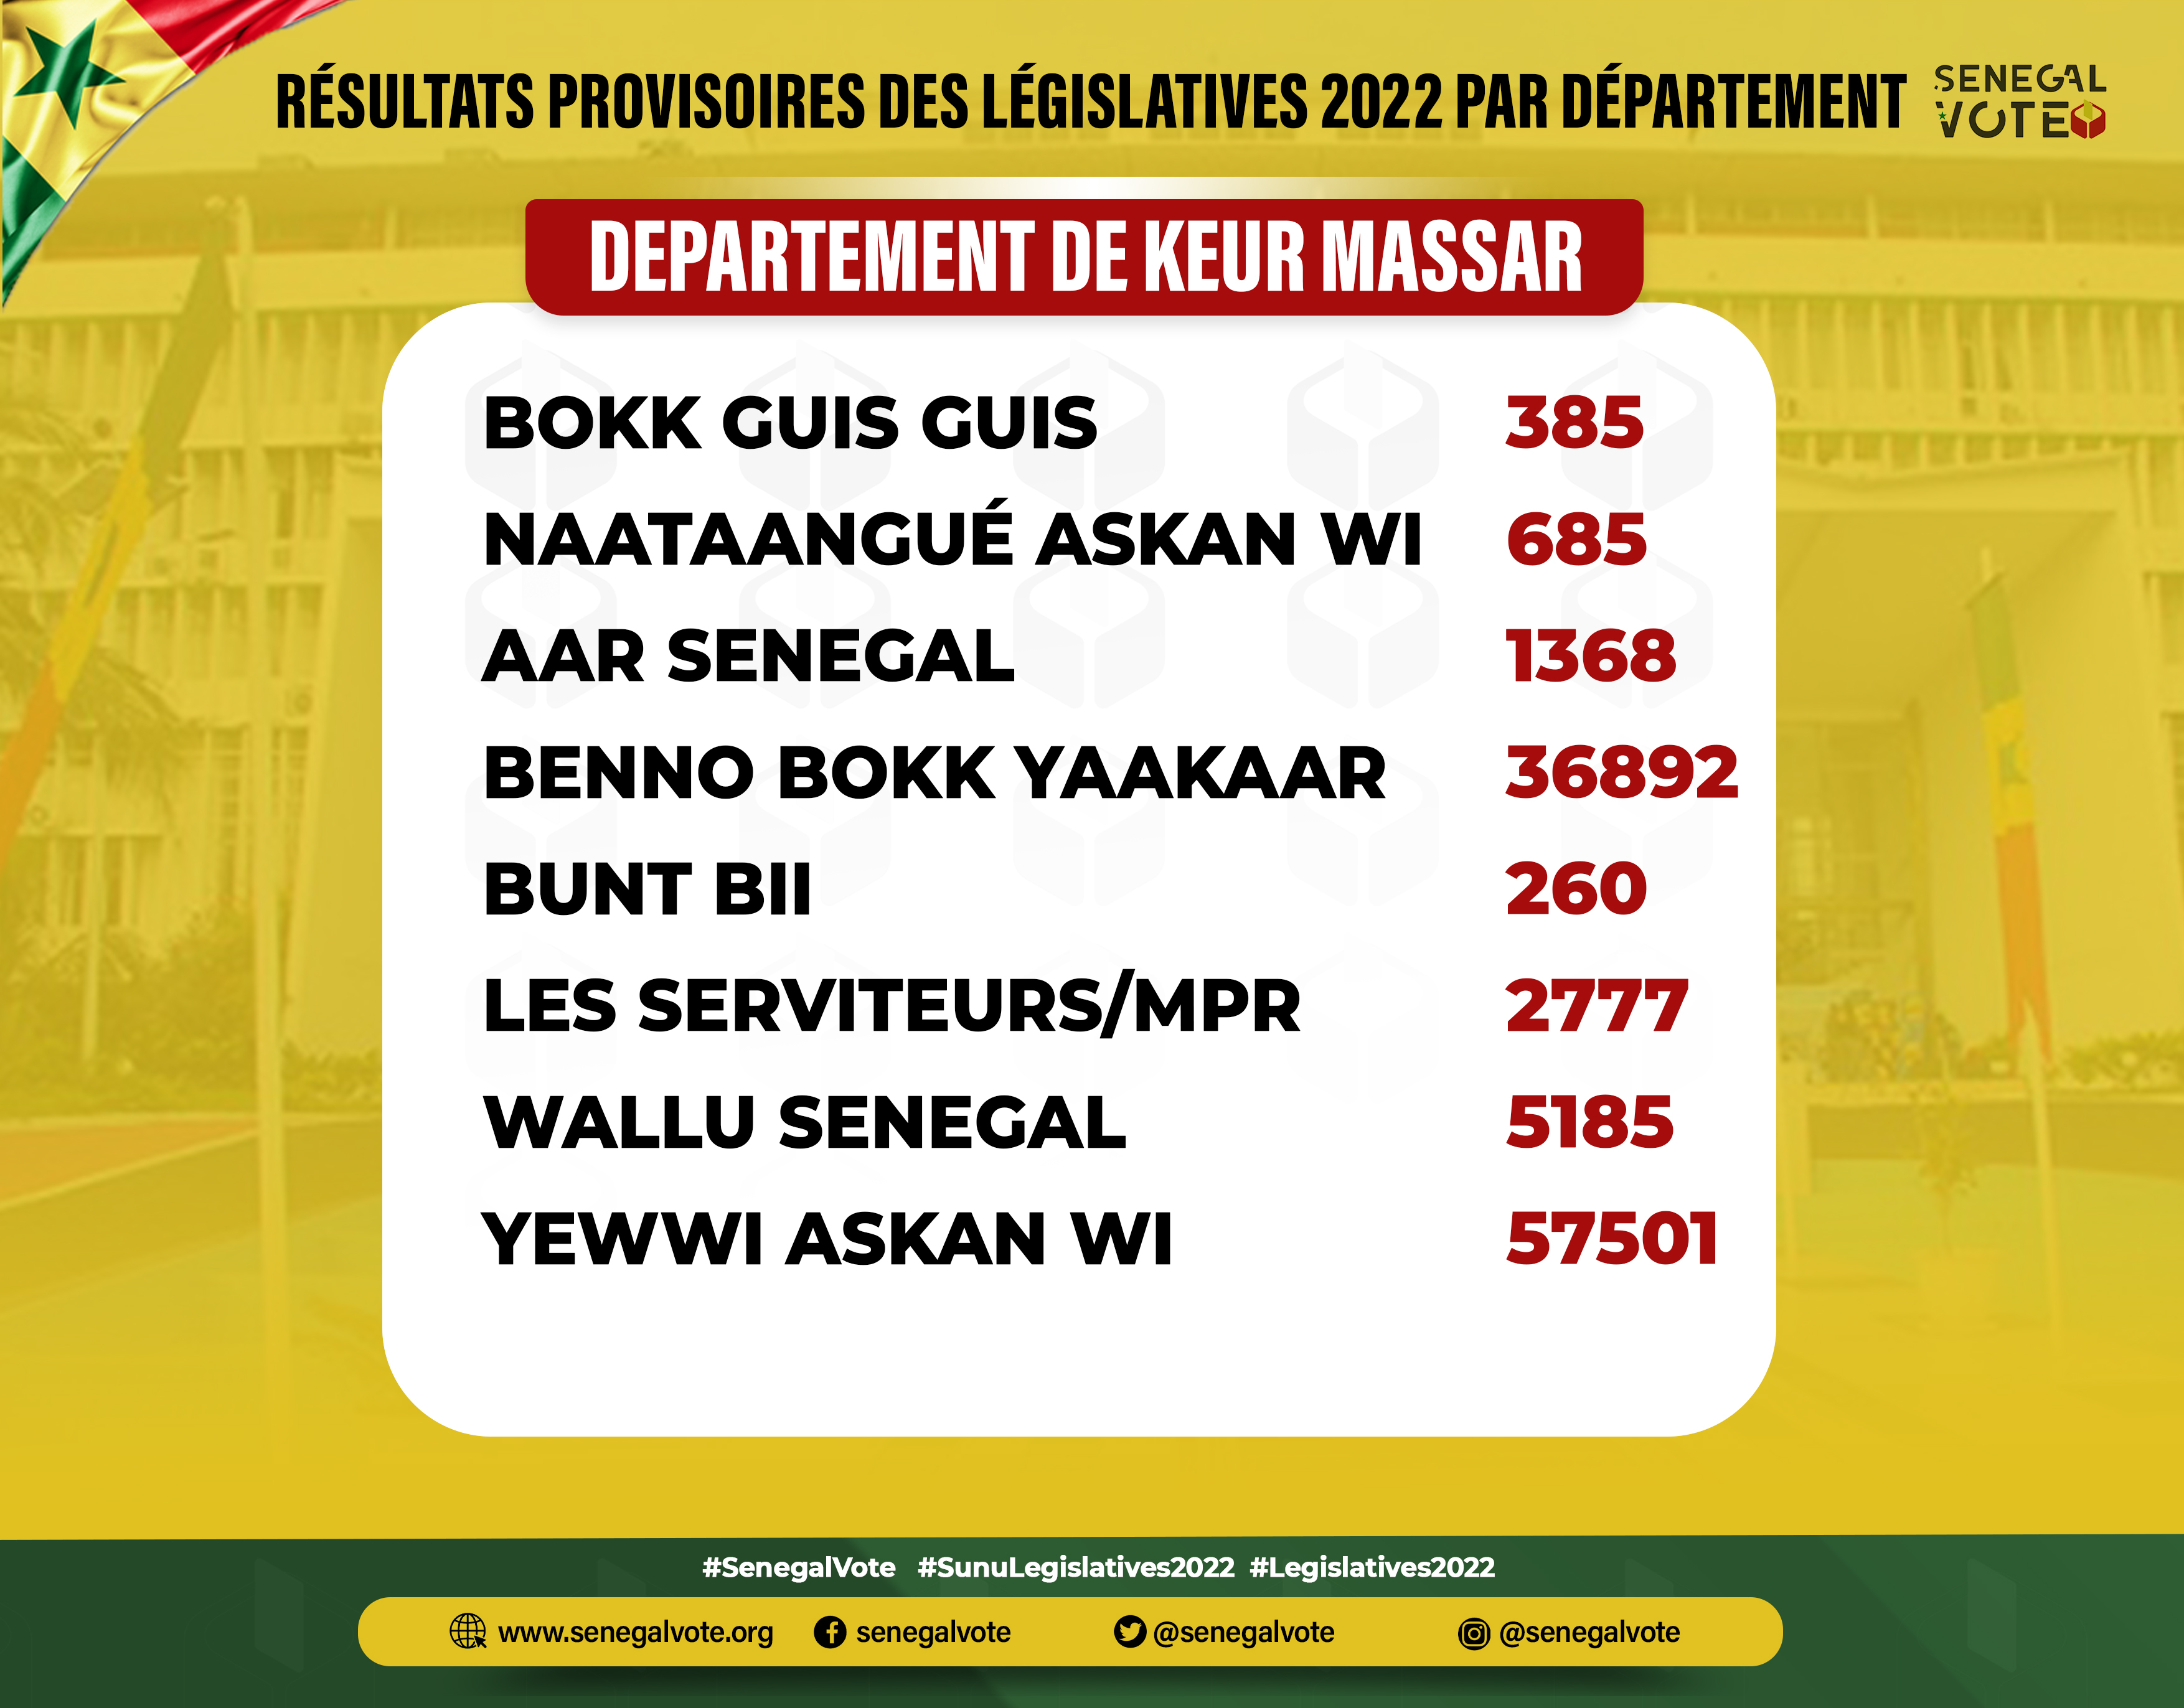 #Législatives2022:  En images, les résultats provisoires par département (#Senegalvote)